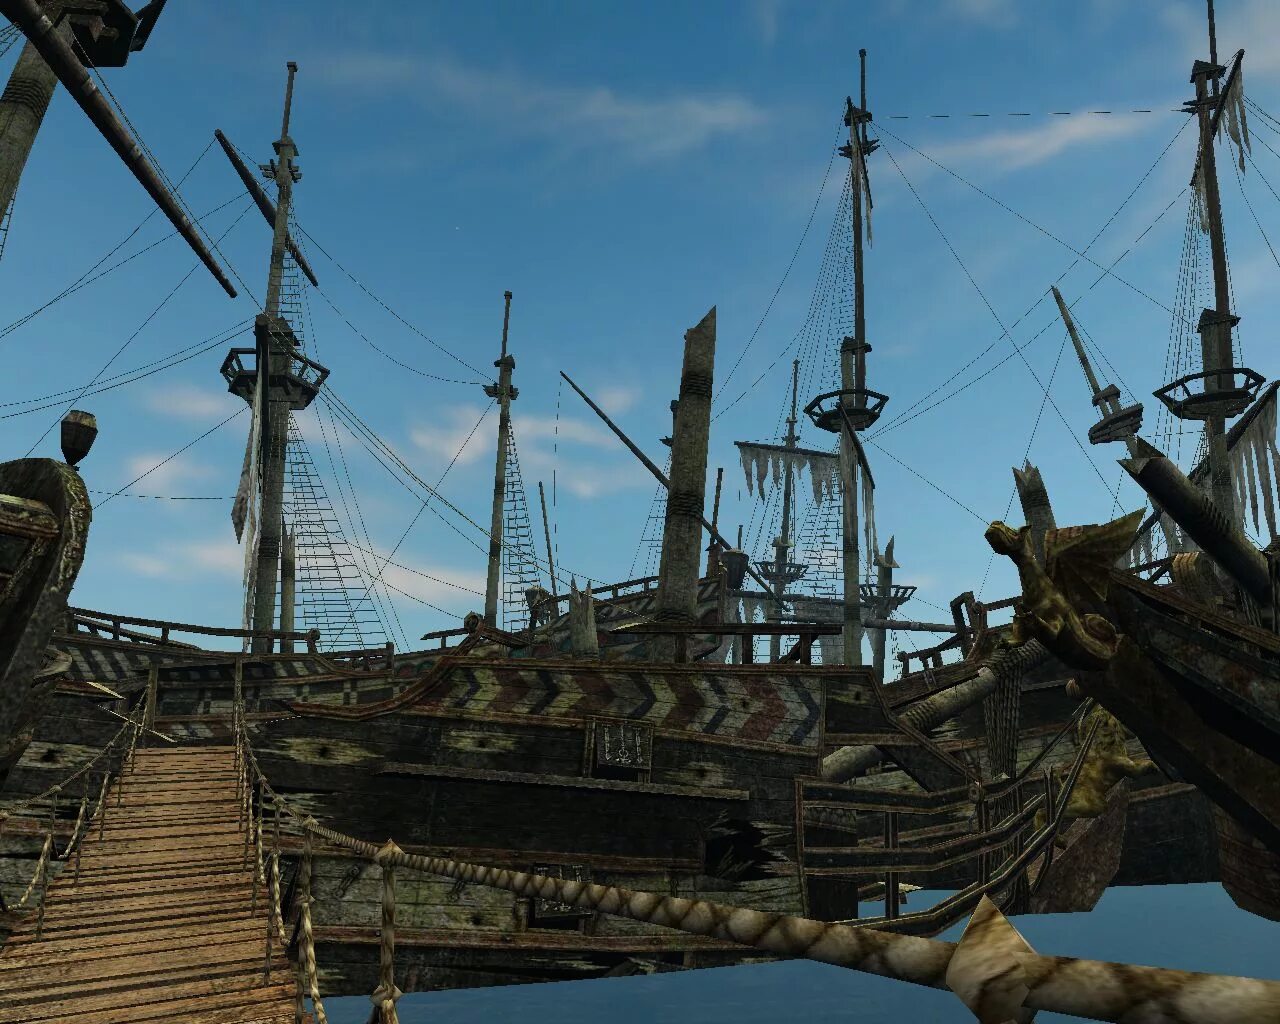 Age of Pirates 2: City of abandoned ships. Корсары: город потерянных кораблей. Корсары бухта погибших кораблей. Симпкинс остров погибших кораблей.